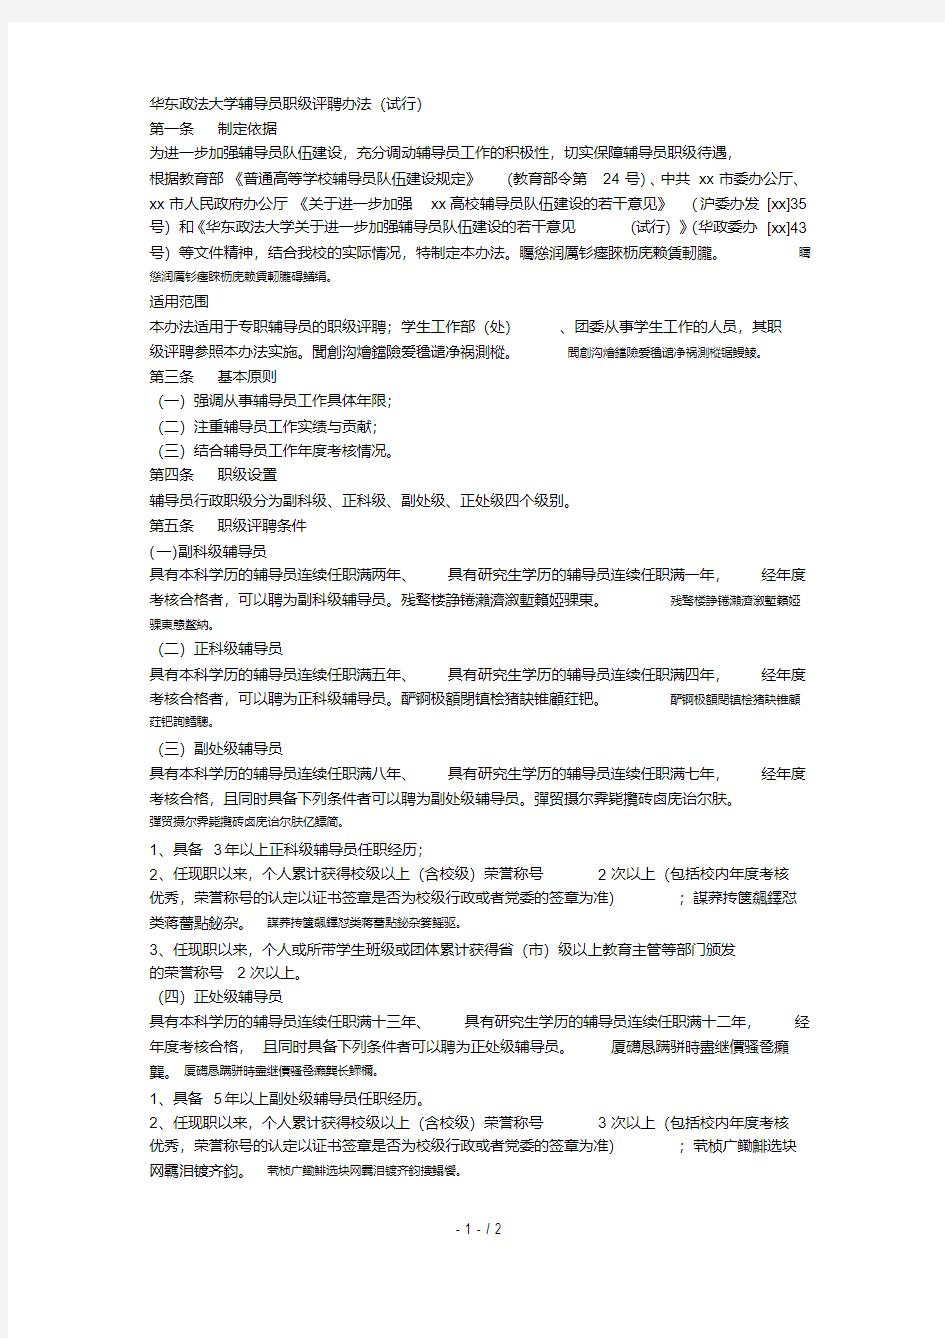 华东政法大学辅导员职级评聘办法(试行)